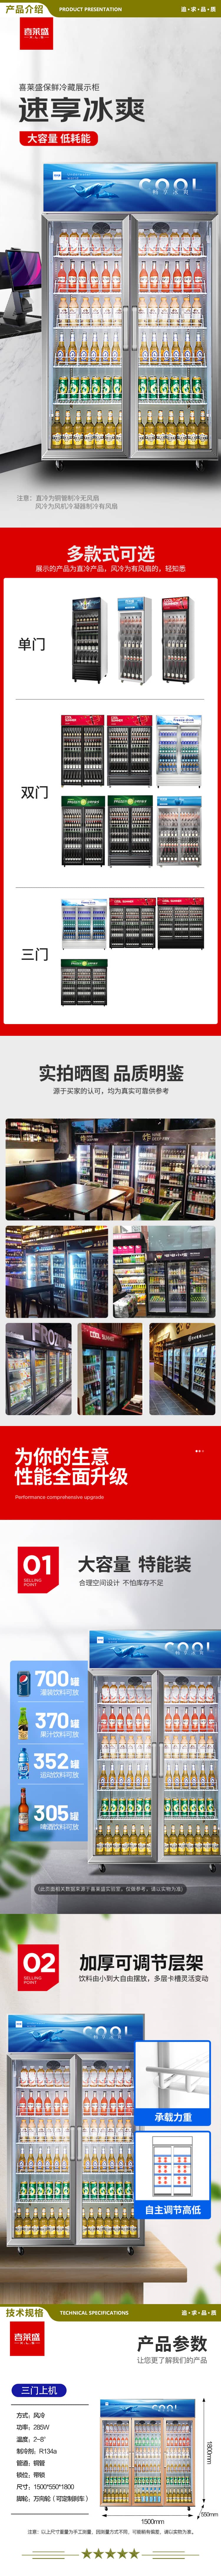 喜莱盛 XLS-3MLF 展示柜冷藏大容量商用陈列冷柜玻璃门 超市便利店冰箱啤酒饮料柜风冷  2.jpg